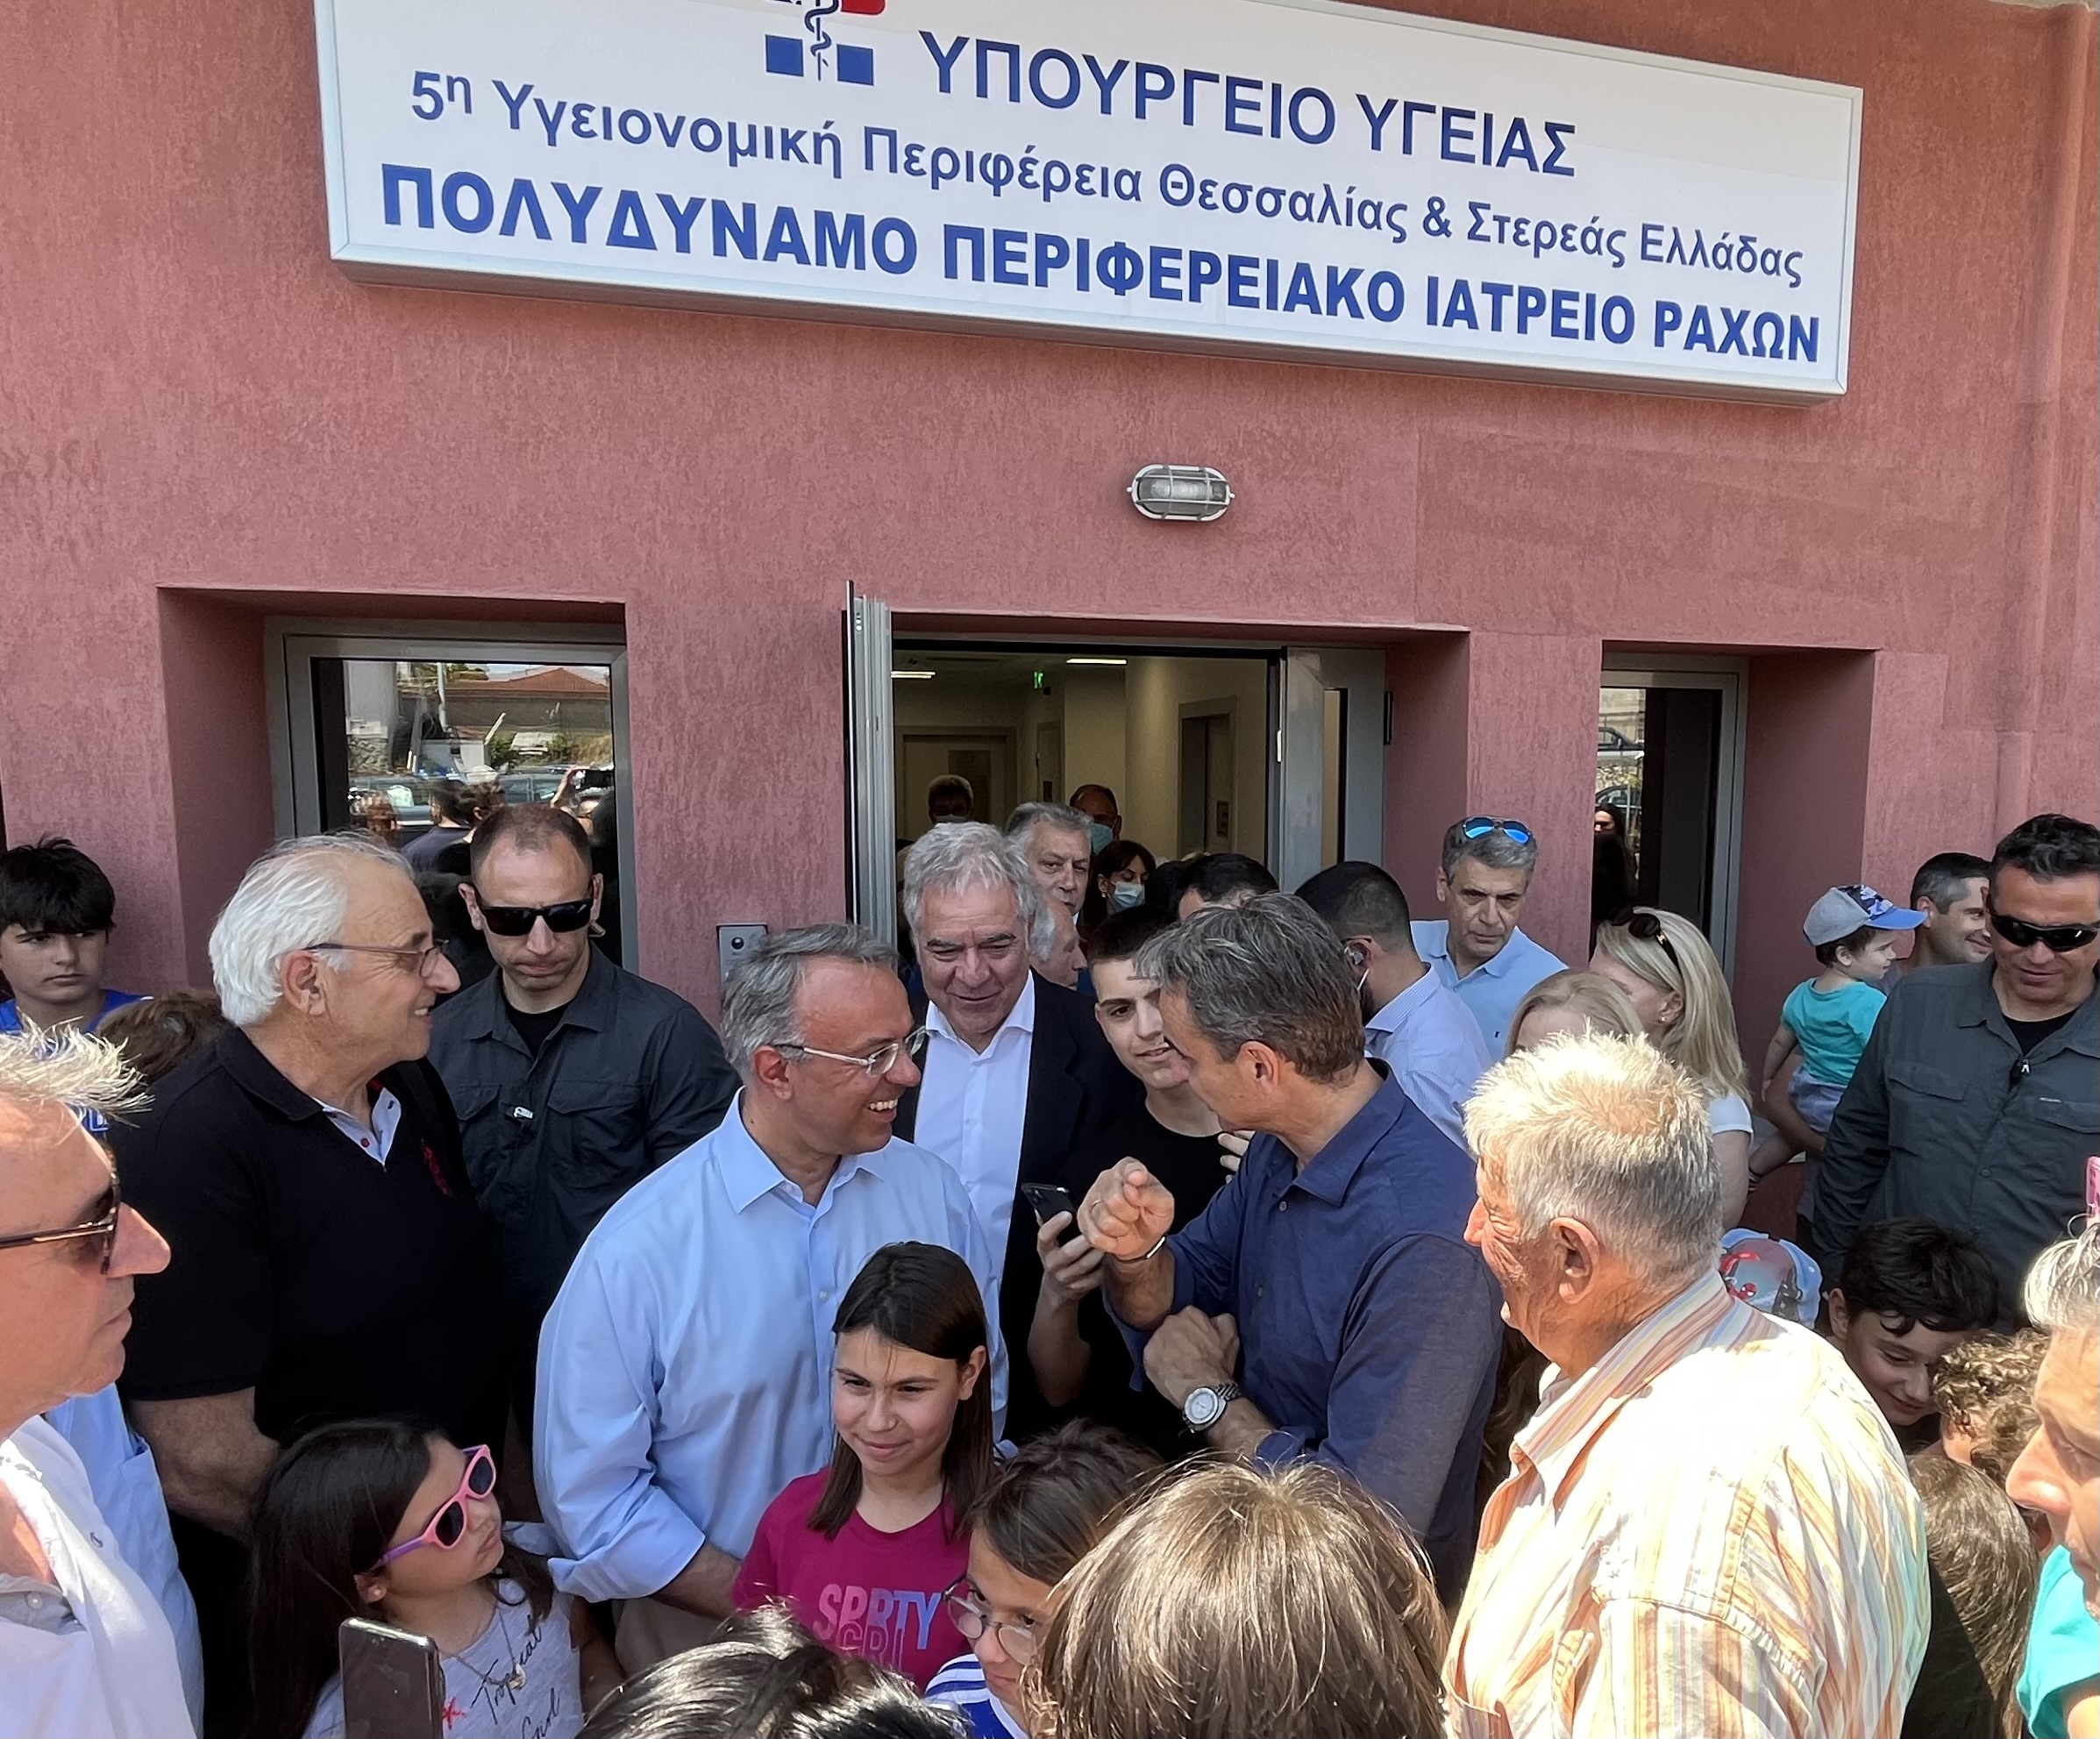 , Ο Χρήστος Σταϊκούρας για την επίσκεψη του Κυριάκου Μητσοτάκη σε Γλύφα, Στυλίδα και Ράχες